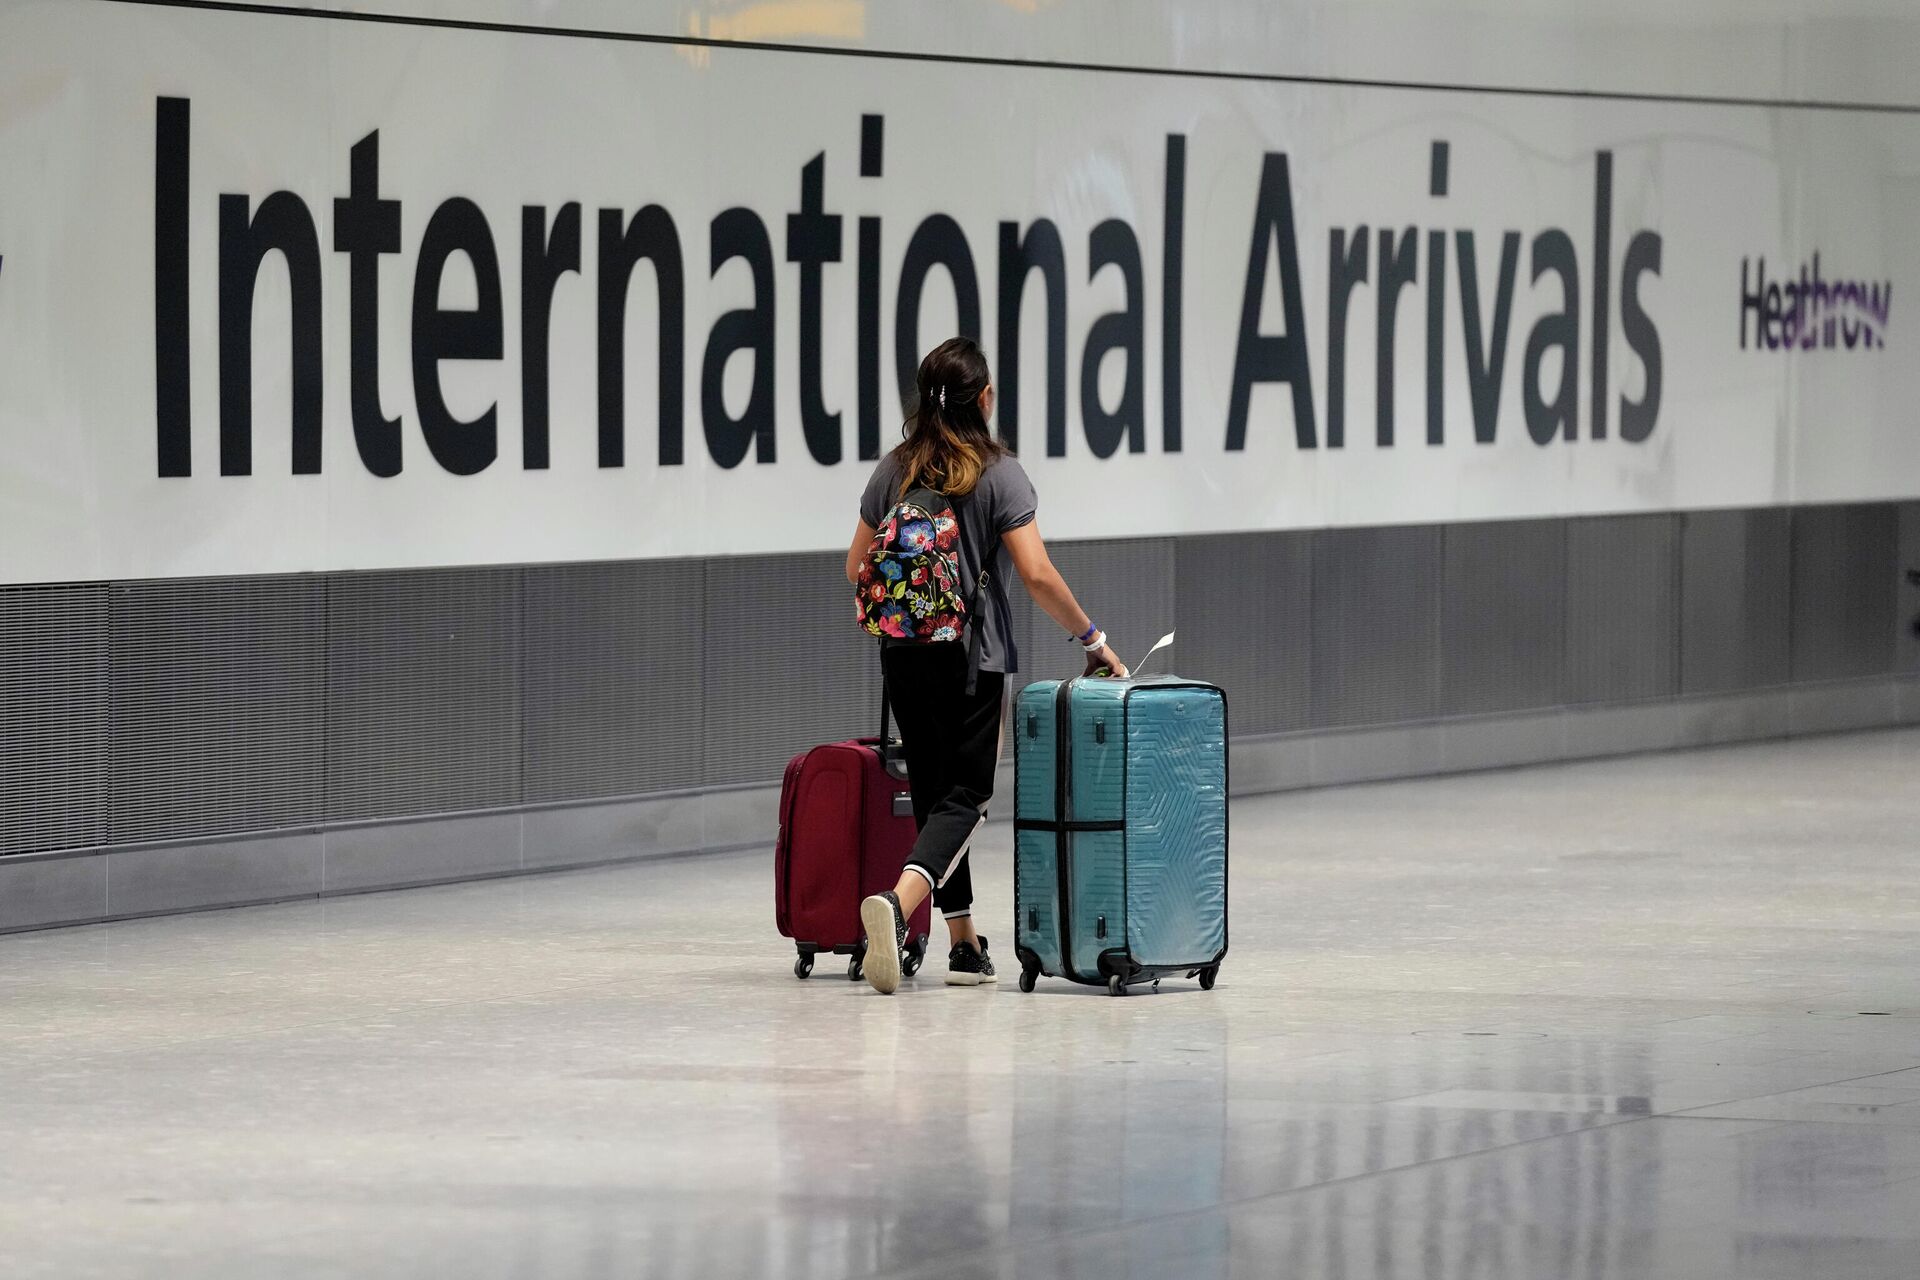 Passageira chega ao Aeroporto Internacional Heathrow, 18 de setembro de 2021. No dia 7 de outubro, o governo brtiânico disse que relaxaria ainda mais as regras de viagens para atrair turistas - Sputnik Brasil, 1920, 18.11.2021